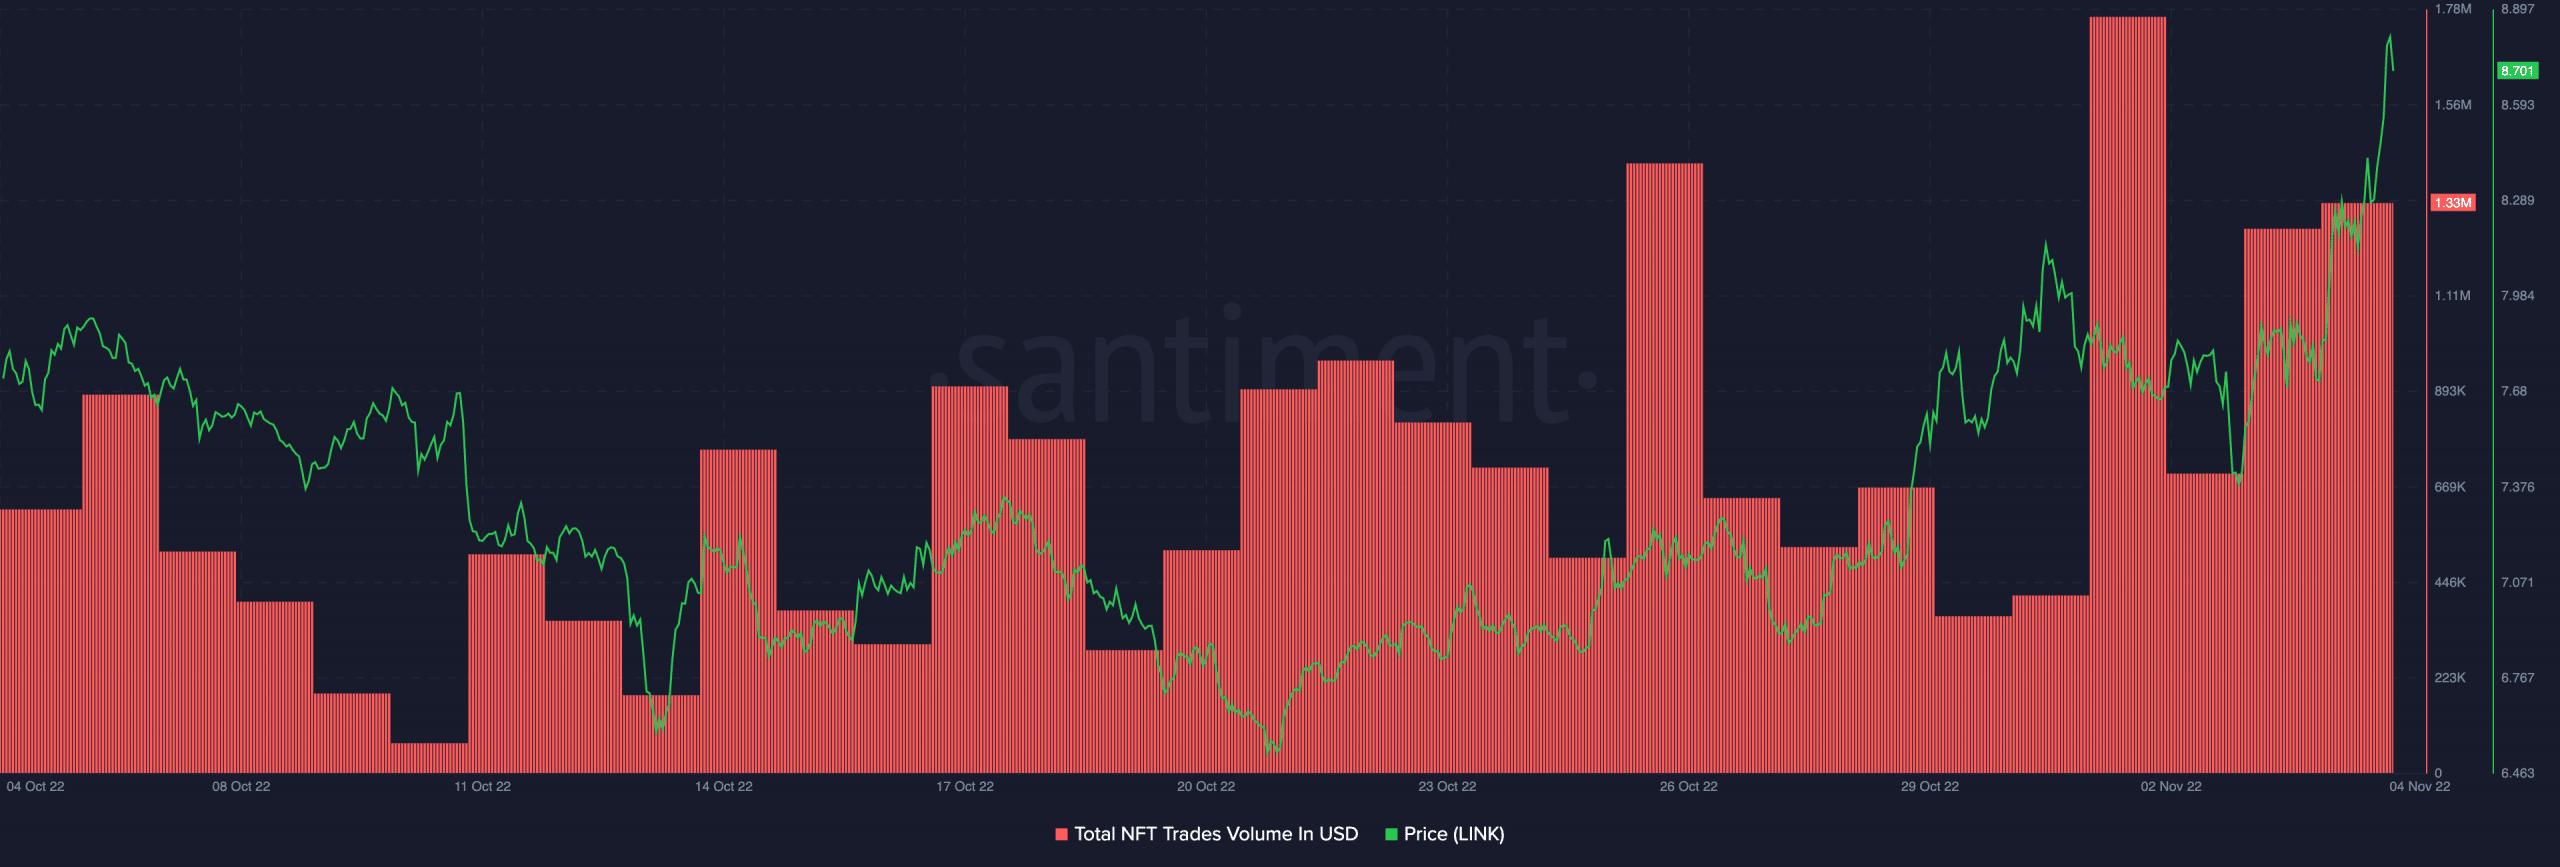 Qué significa el máximo de 30 días de Chainlink y el aumento en el volumen de NFT para los comerciantes de LINK